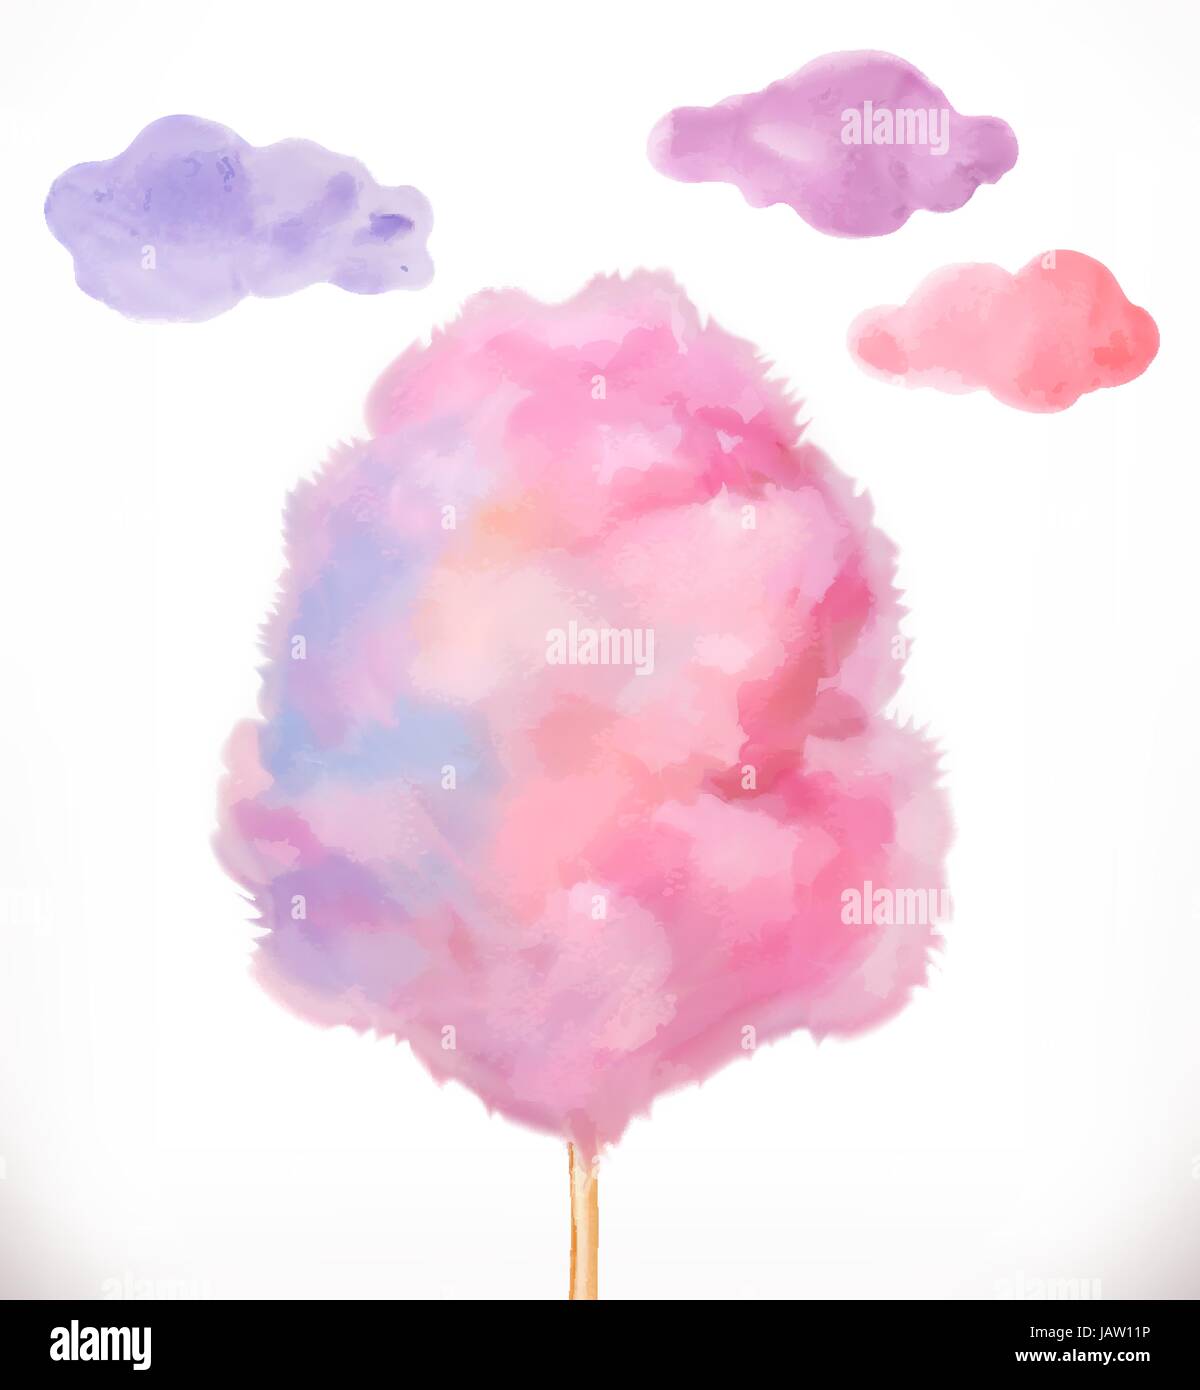 Zuckerwatte. Zucker-Wolken. Aquarell-Vektor-illustration Stock Vektor